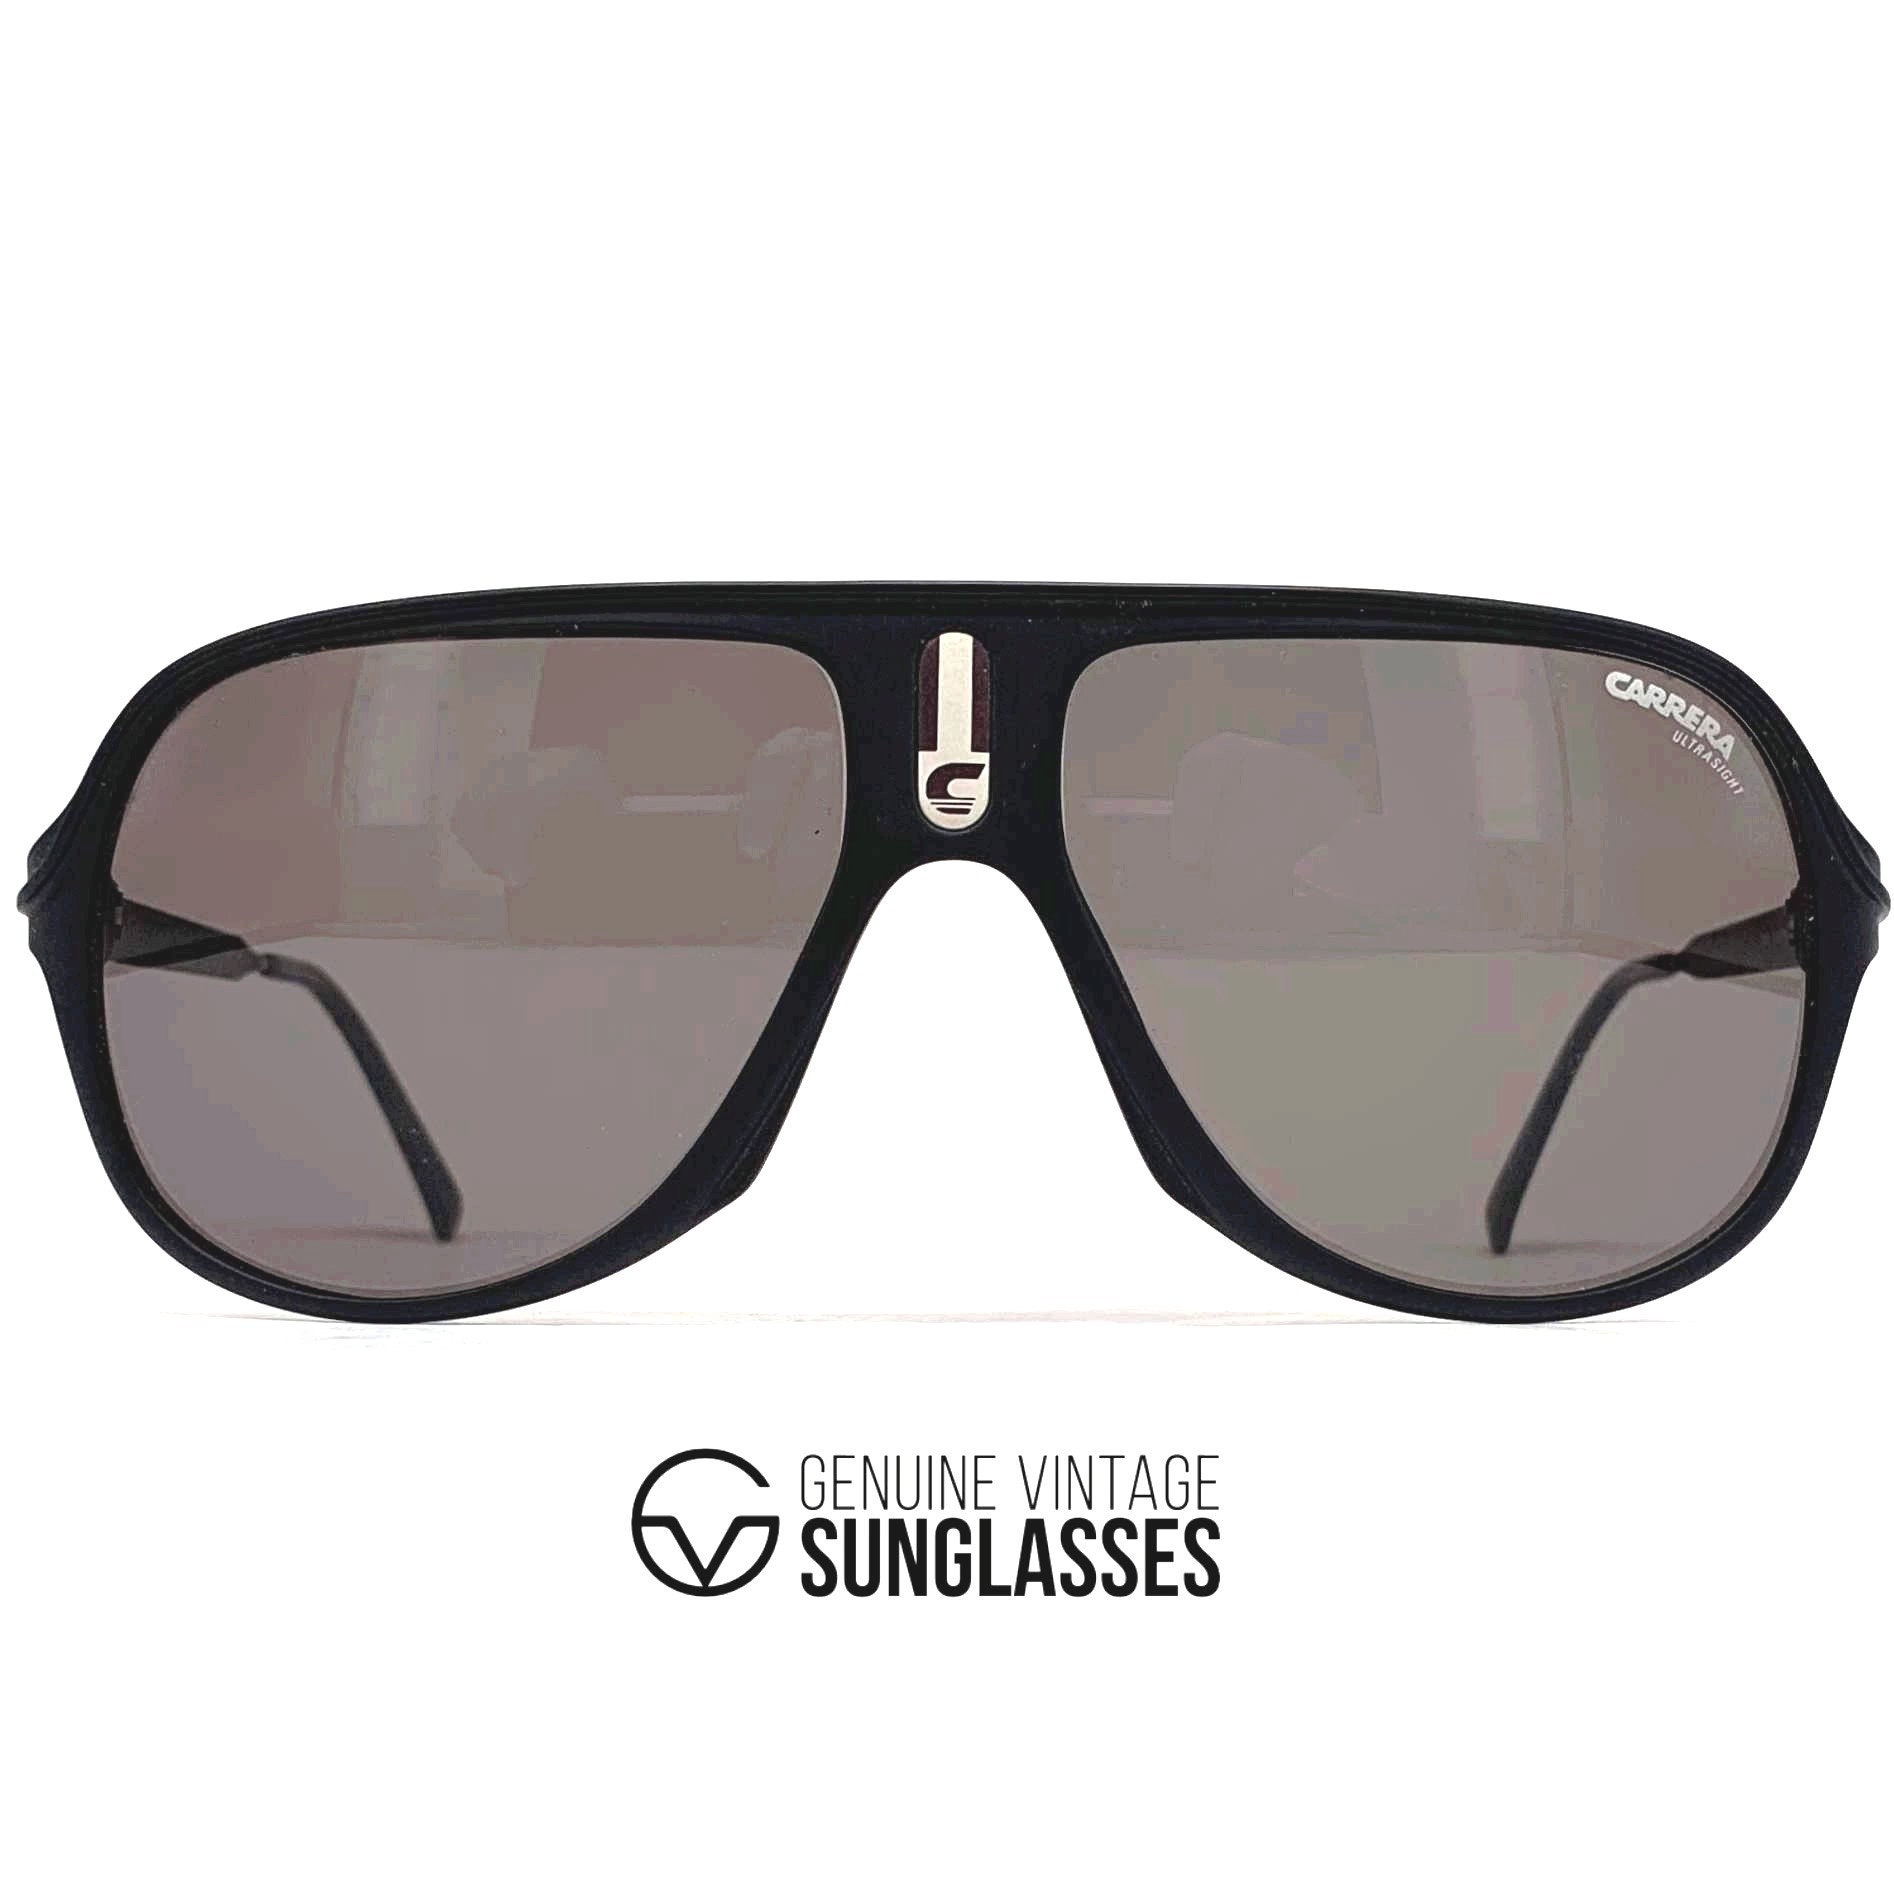 NOS Vintage CARRERA 5547 ultrasight Sunglasses - Etsy